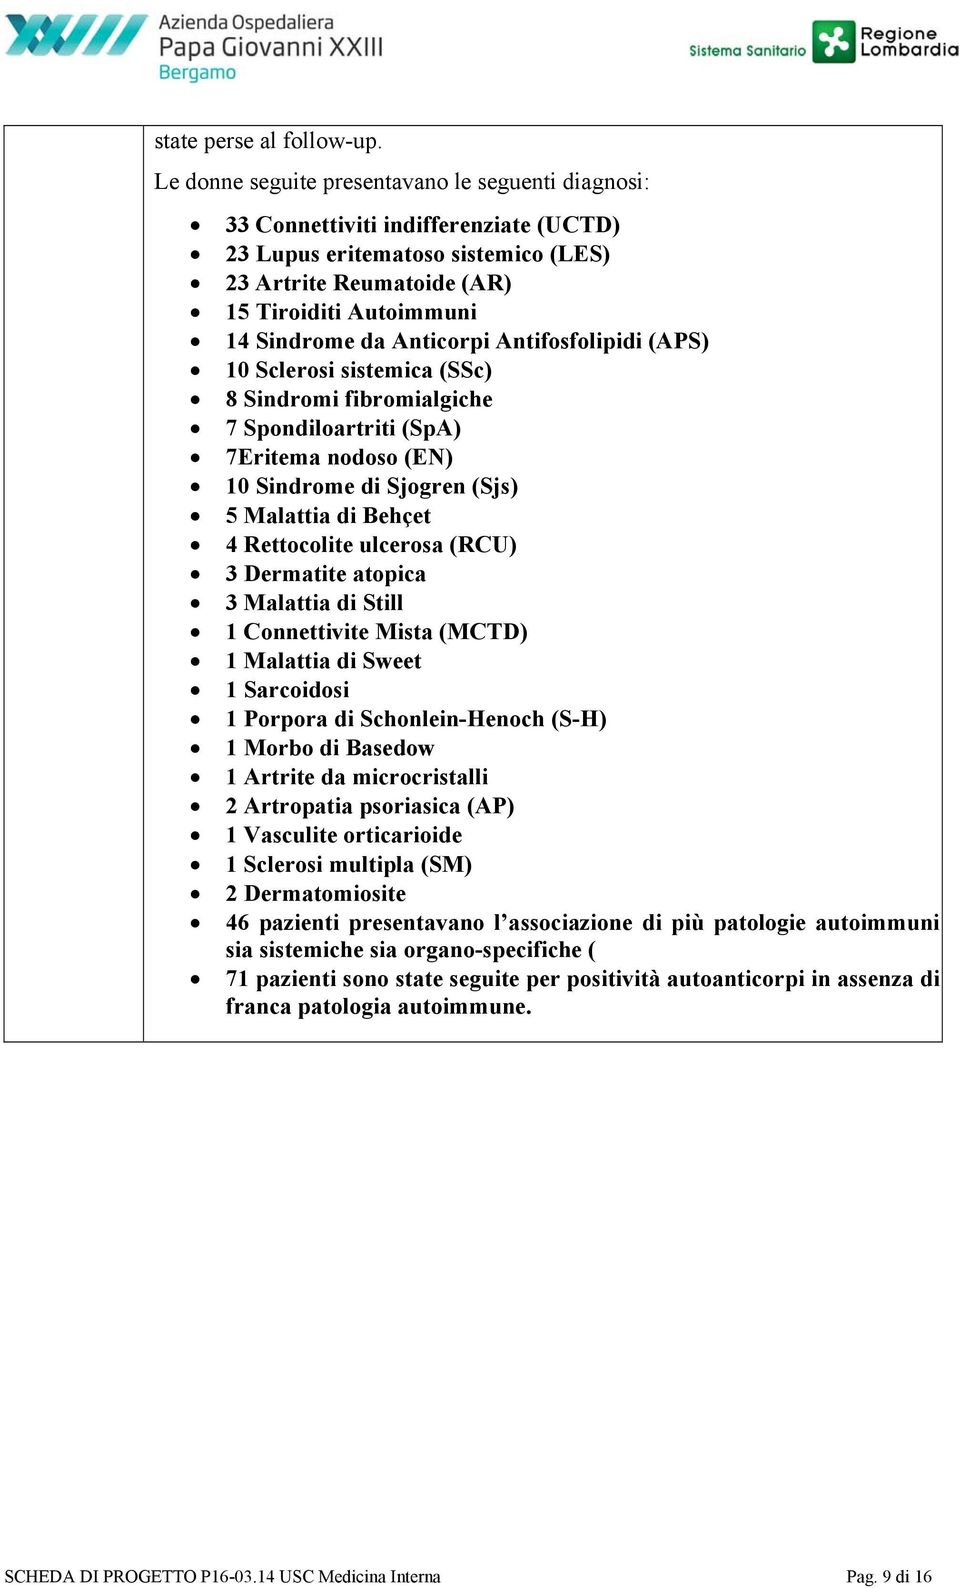 Anticorpi Antifosfolipidi (APS) 10 Sclerosi sistemica (SSc) 8 Sindromi fibromialgiche 7 Spondiloartriti (SpA) 7Eritema nodoso (EN) 10 Sindrome di Sjogren (Sjs) 5 Malattia di Behçet 4 Rettocolite